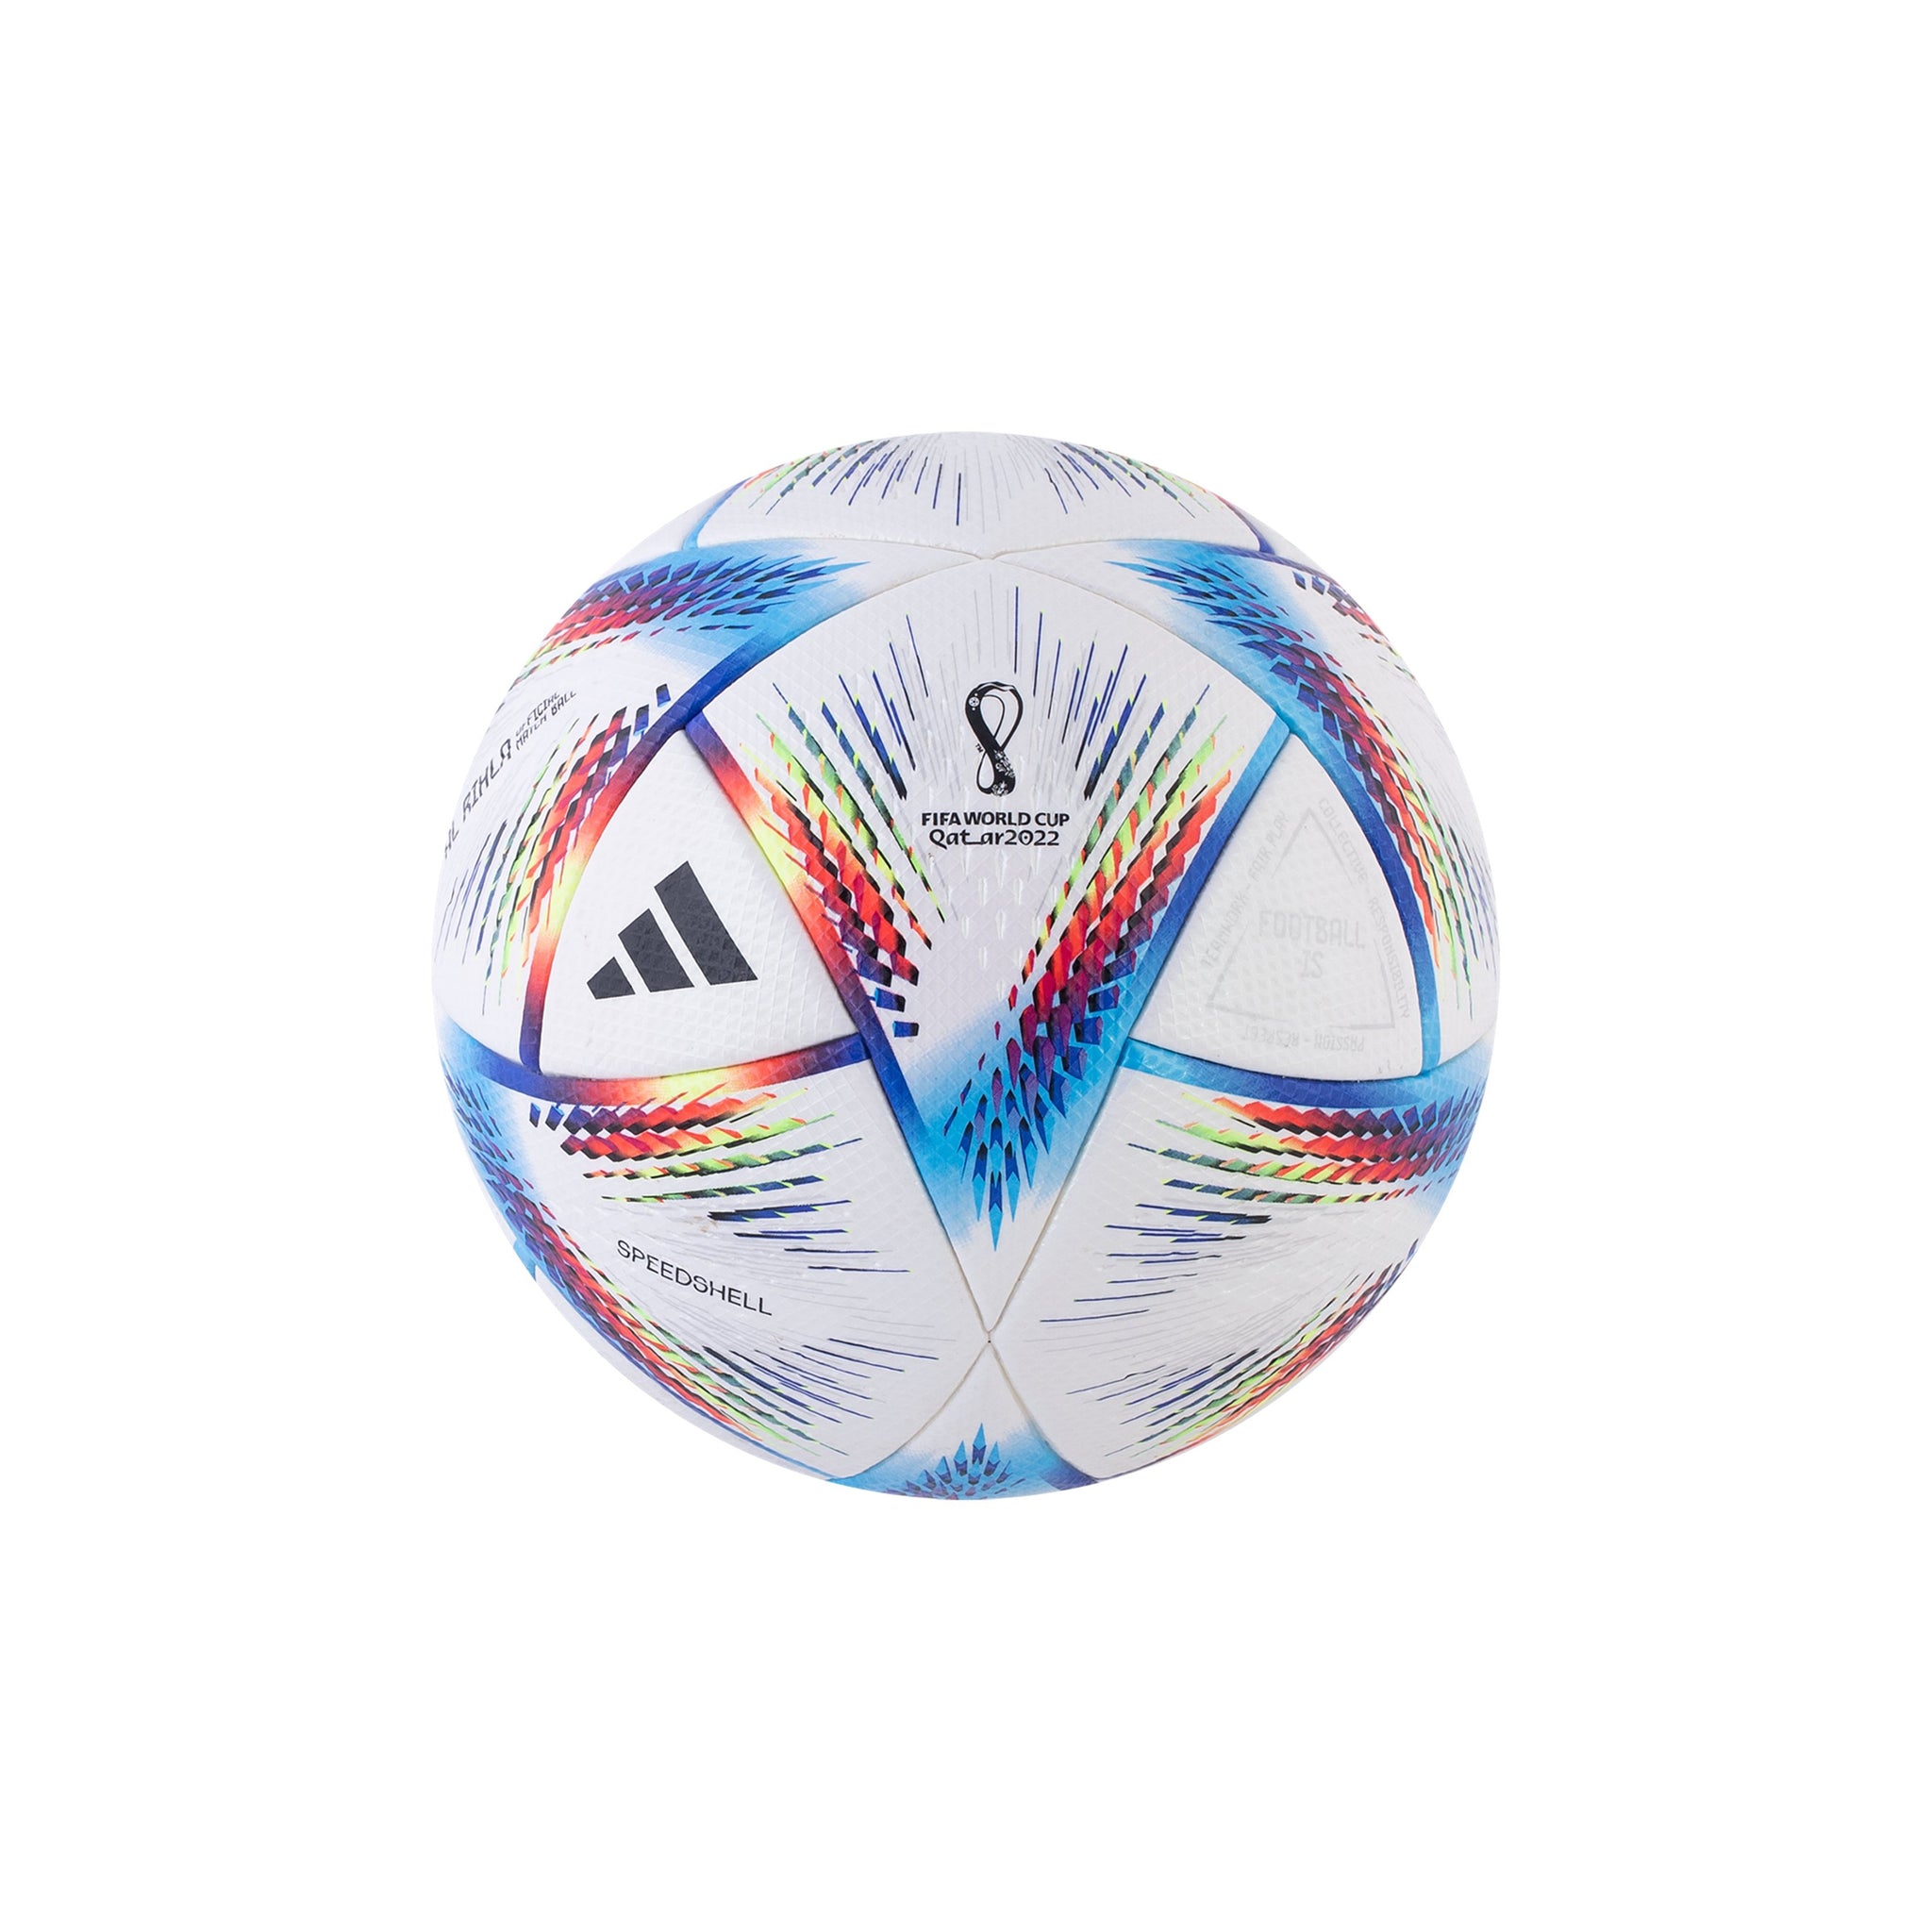 ADIDAS Al Rihla FIFA World Cup Qatar 2022 Official Match Ball